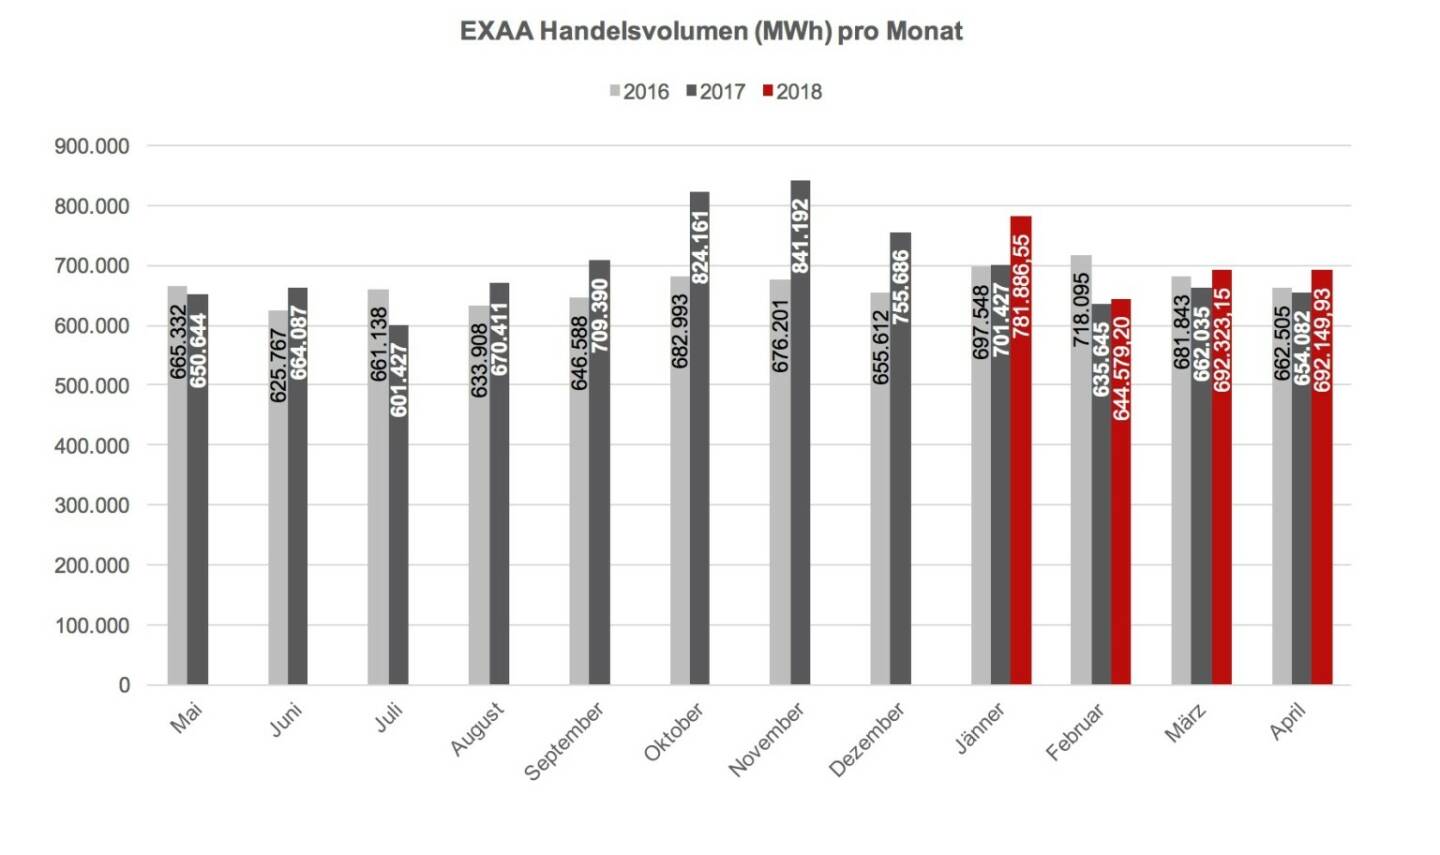 Im Gegensatz zum allgemeinen Markttrend konnte EXAA auch für diesen Monat einen Zuwachs an Volumen verzeichnen - EXAA Handelsvolumen (MWh) pro Monat